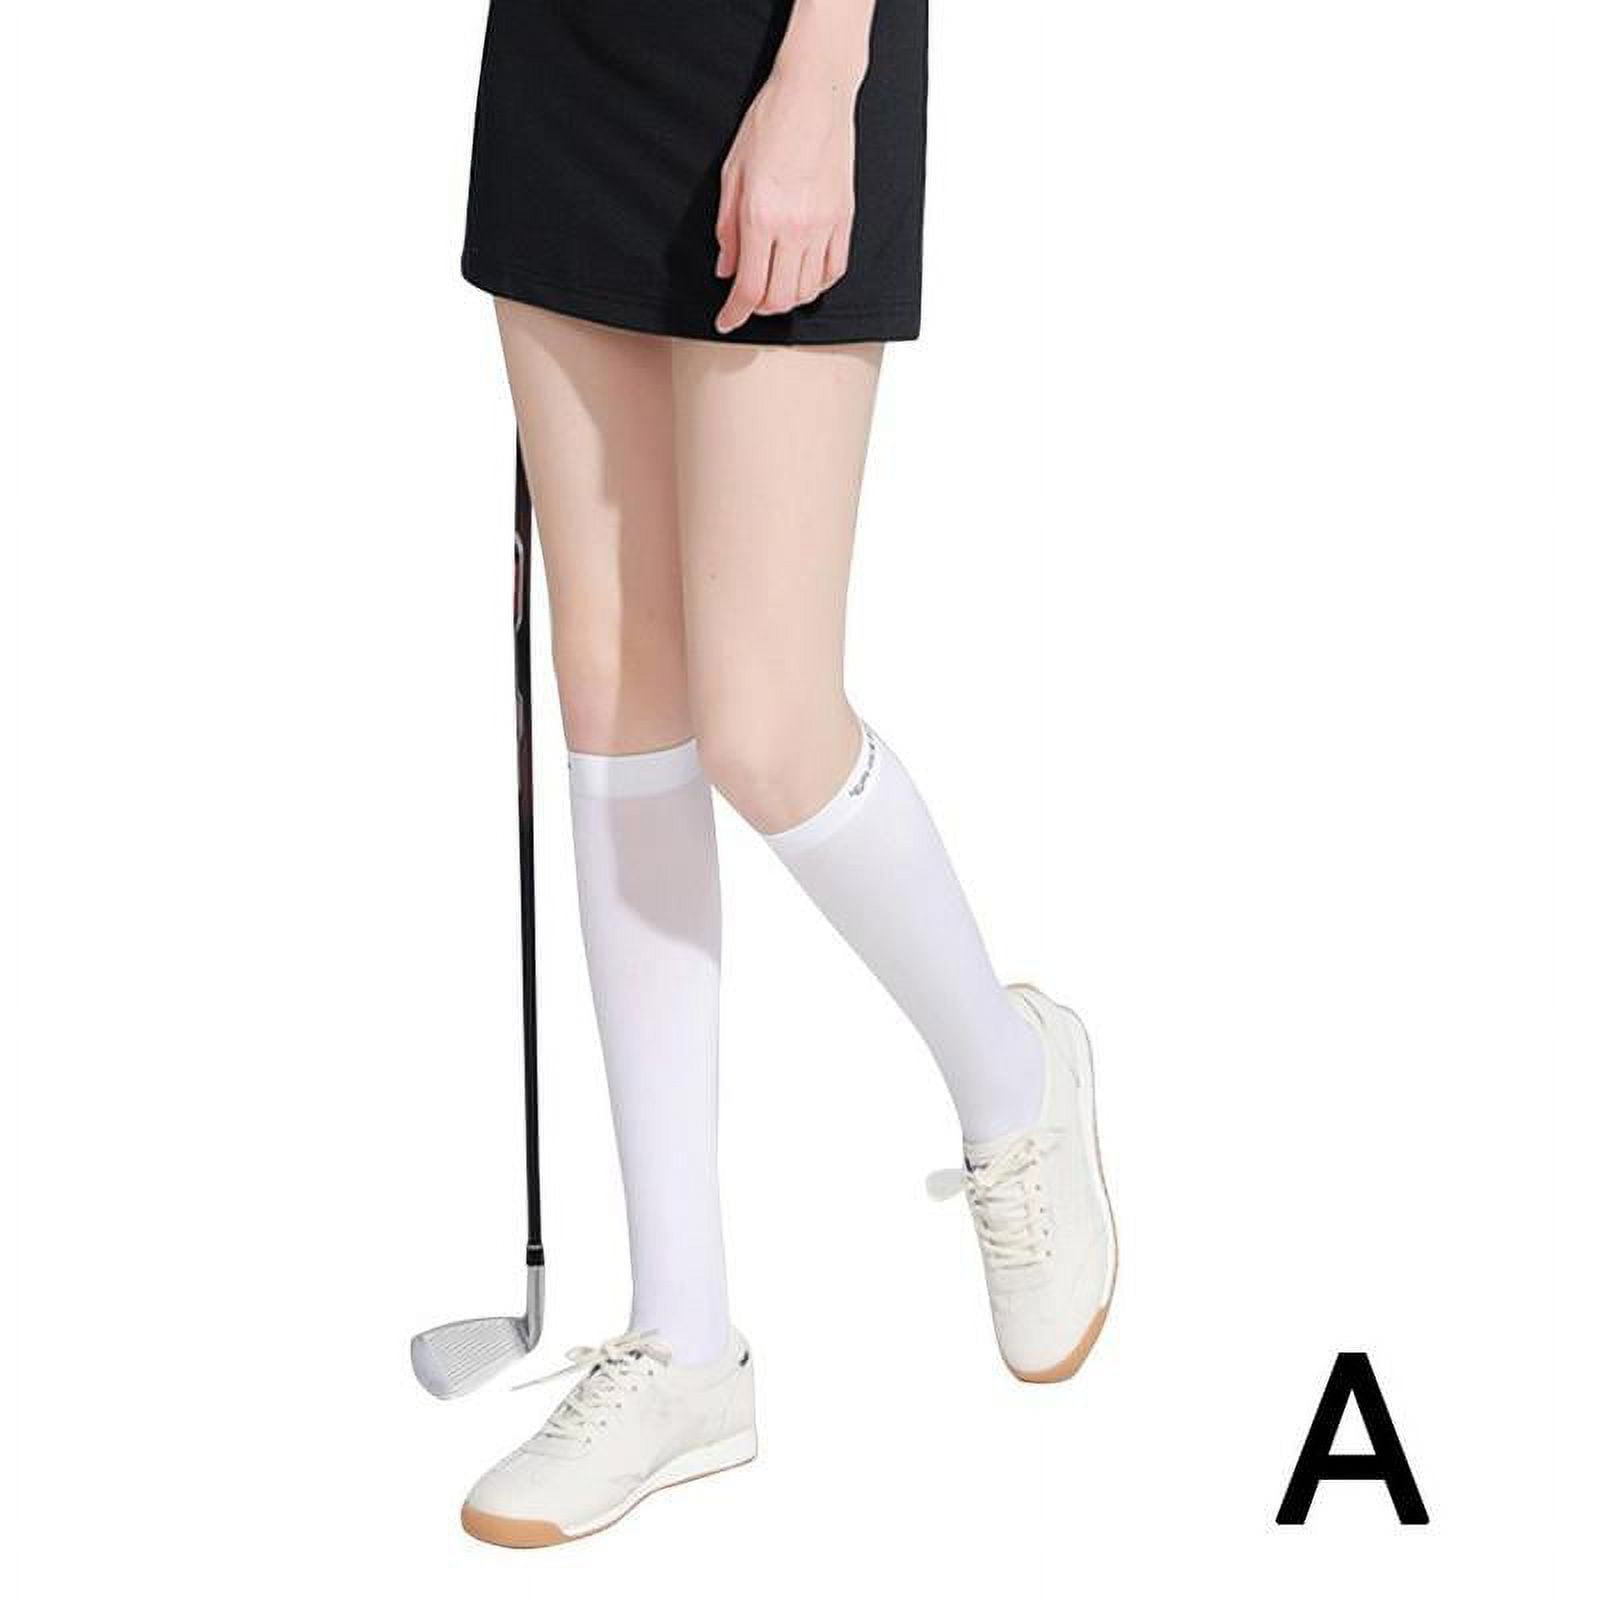 Buy Women's Golf Wear Sunscreen Pants Silk Leggings Ankle Socks